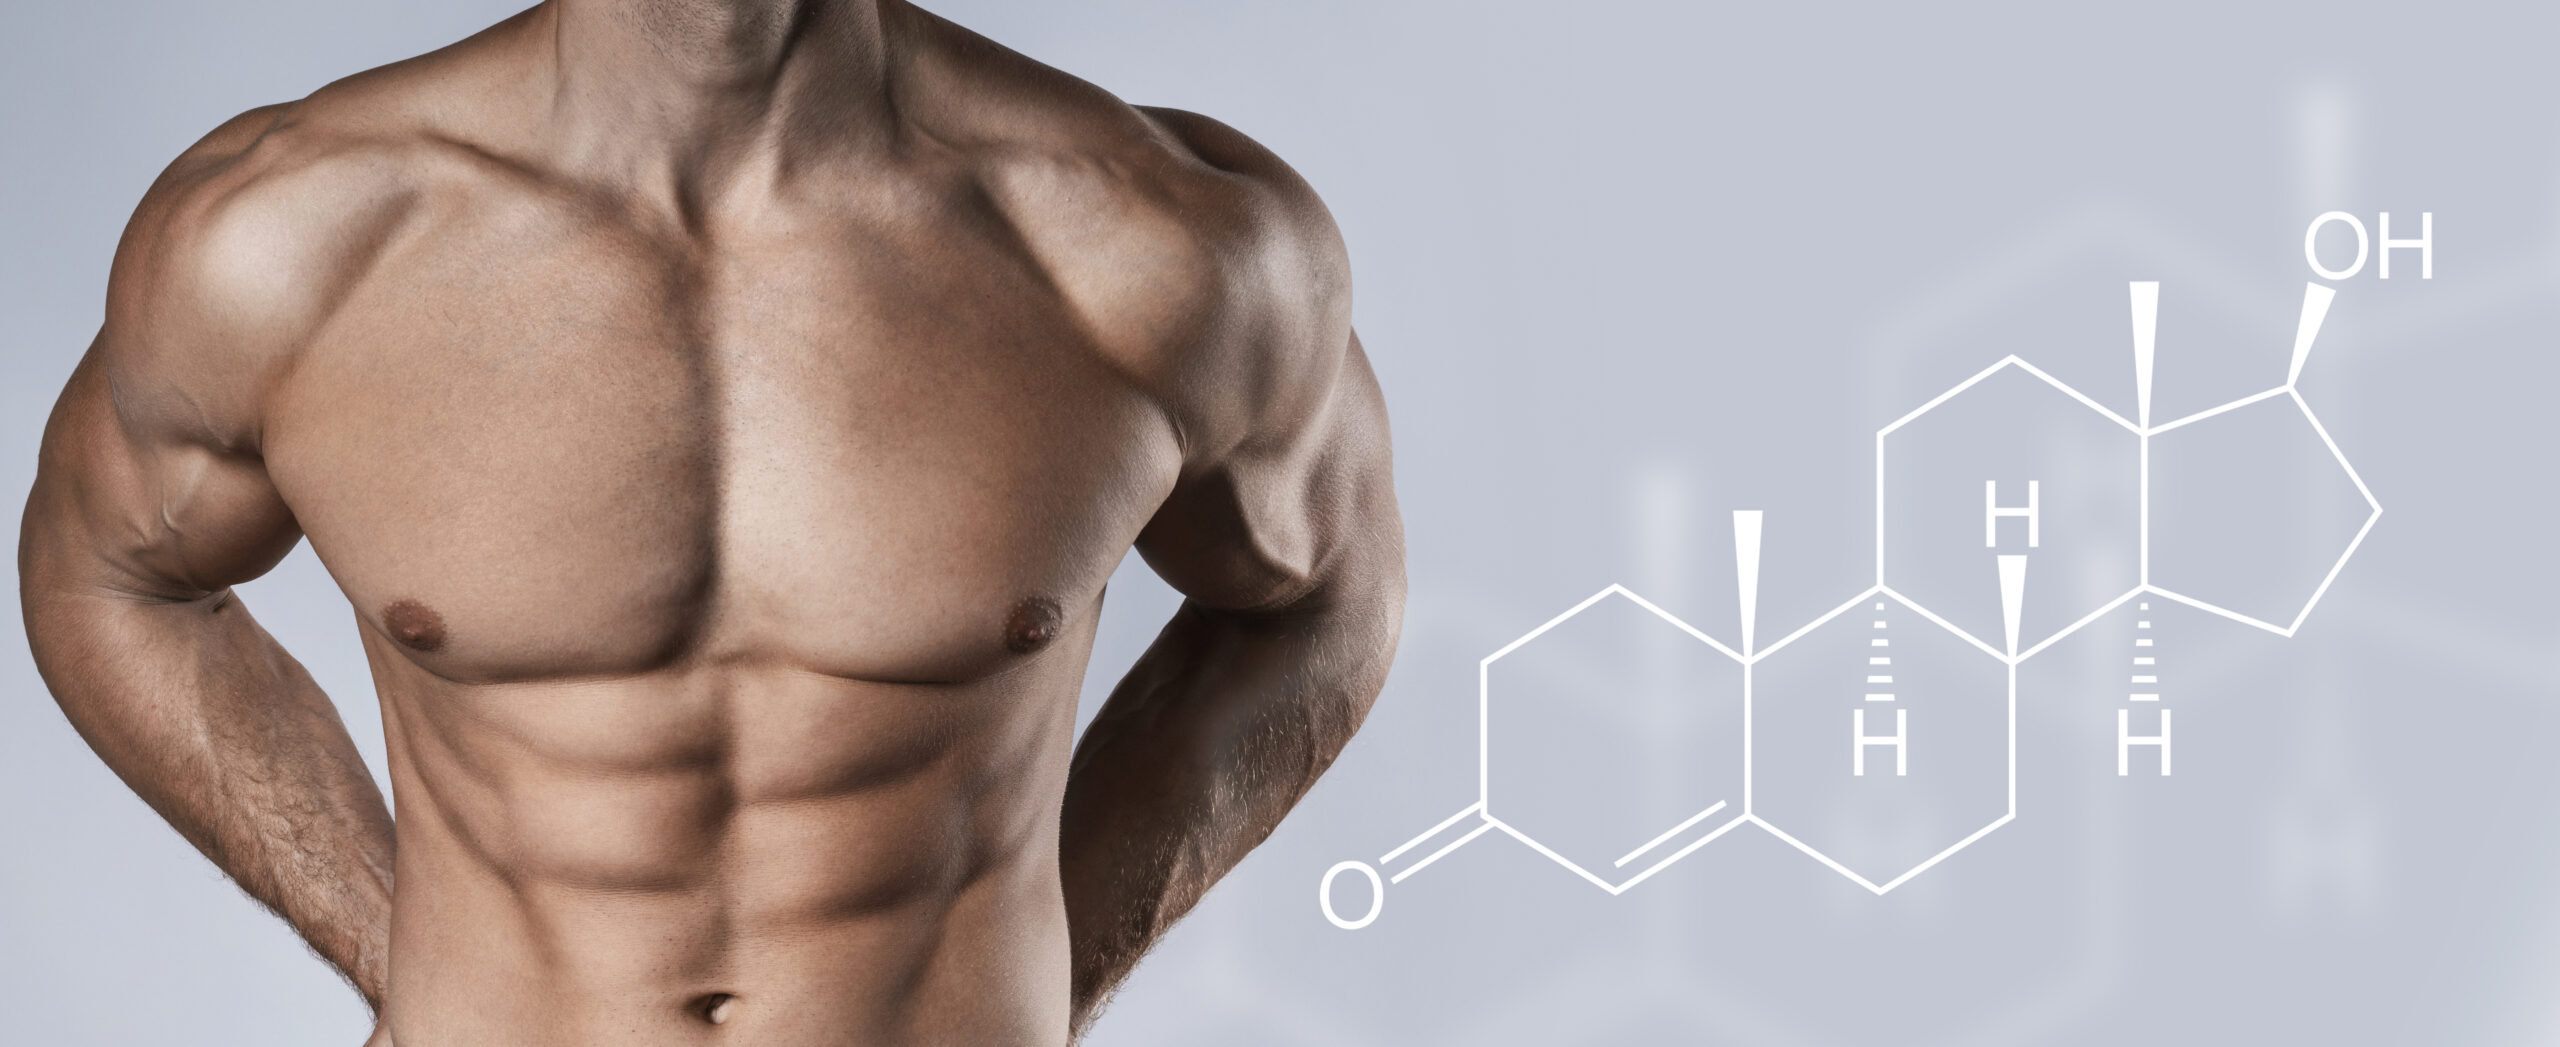 Testosteron: Das Schlüsselhormon für den Mann und wie man es (natürlich) steigern kann